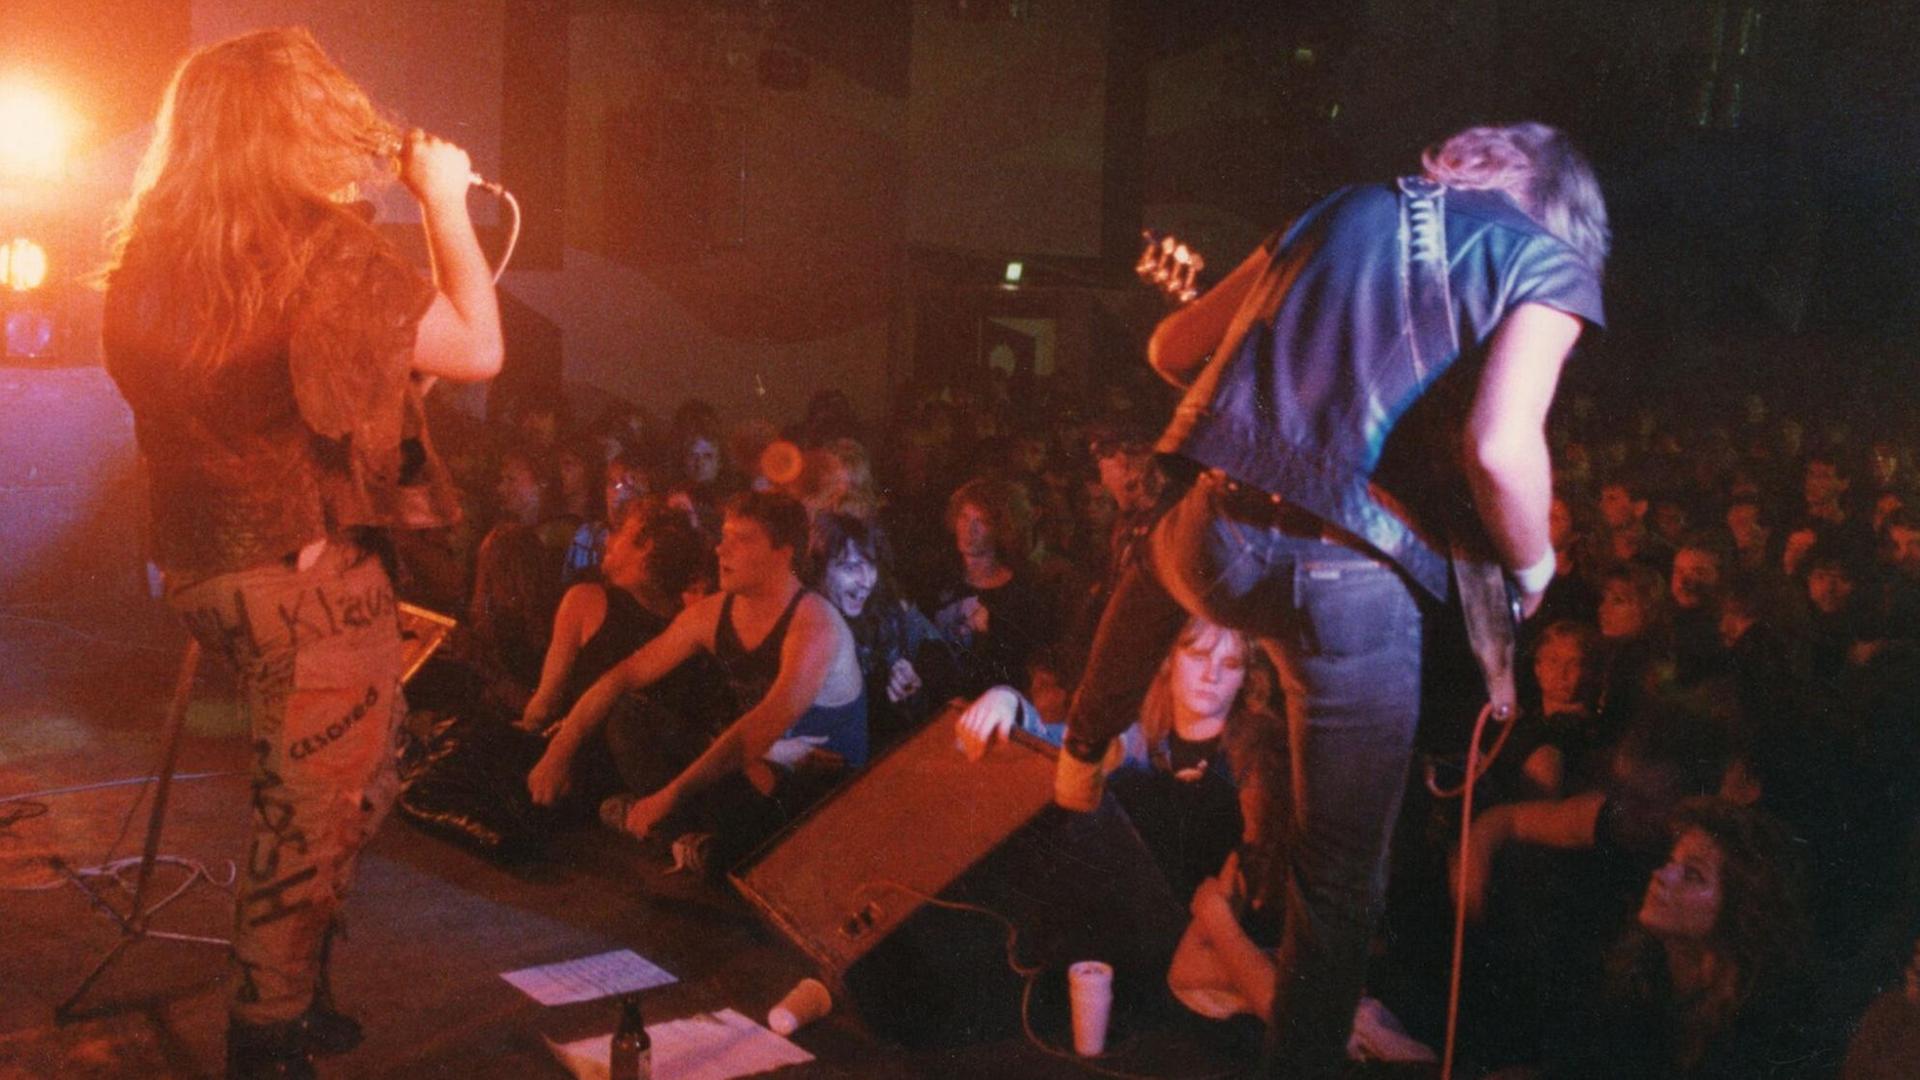 Man sieht die Band Darkland bei ihrem Auftritt im Berliner Langhansclub. Die Musiker haben lange Haare und spielen vor einem euphorischen Publikum